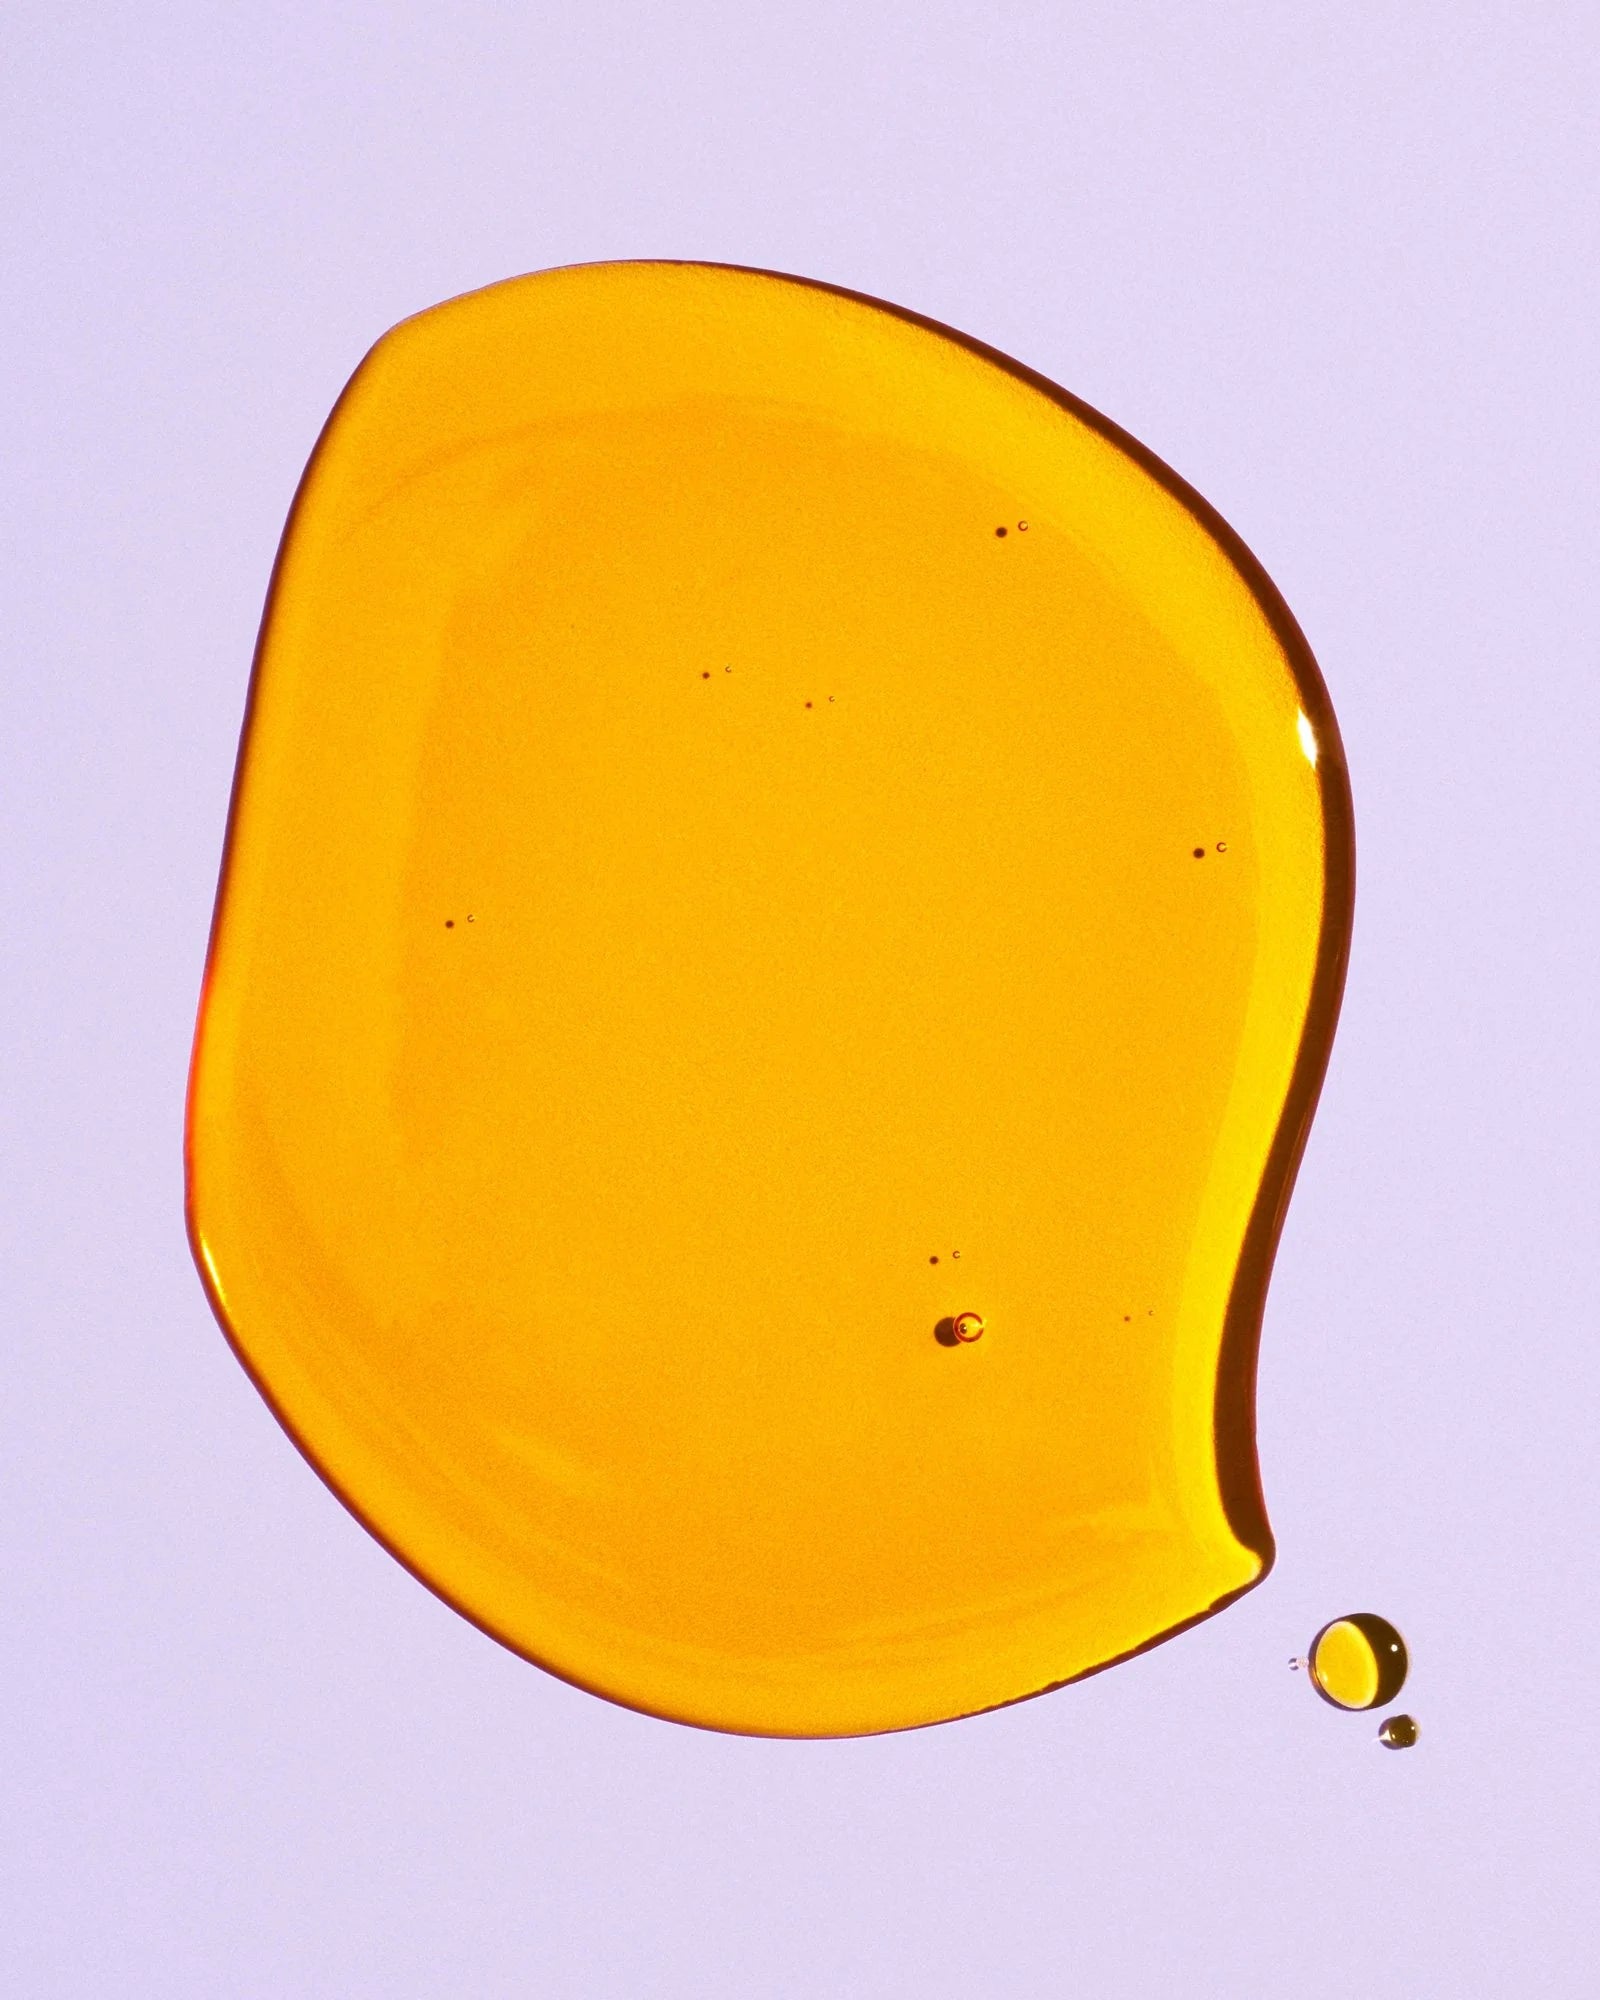 Herbivore Phoenix Rosehip Anti-Aging Face Oil